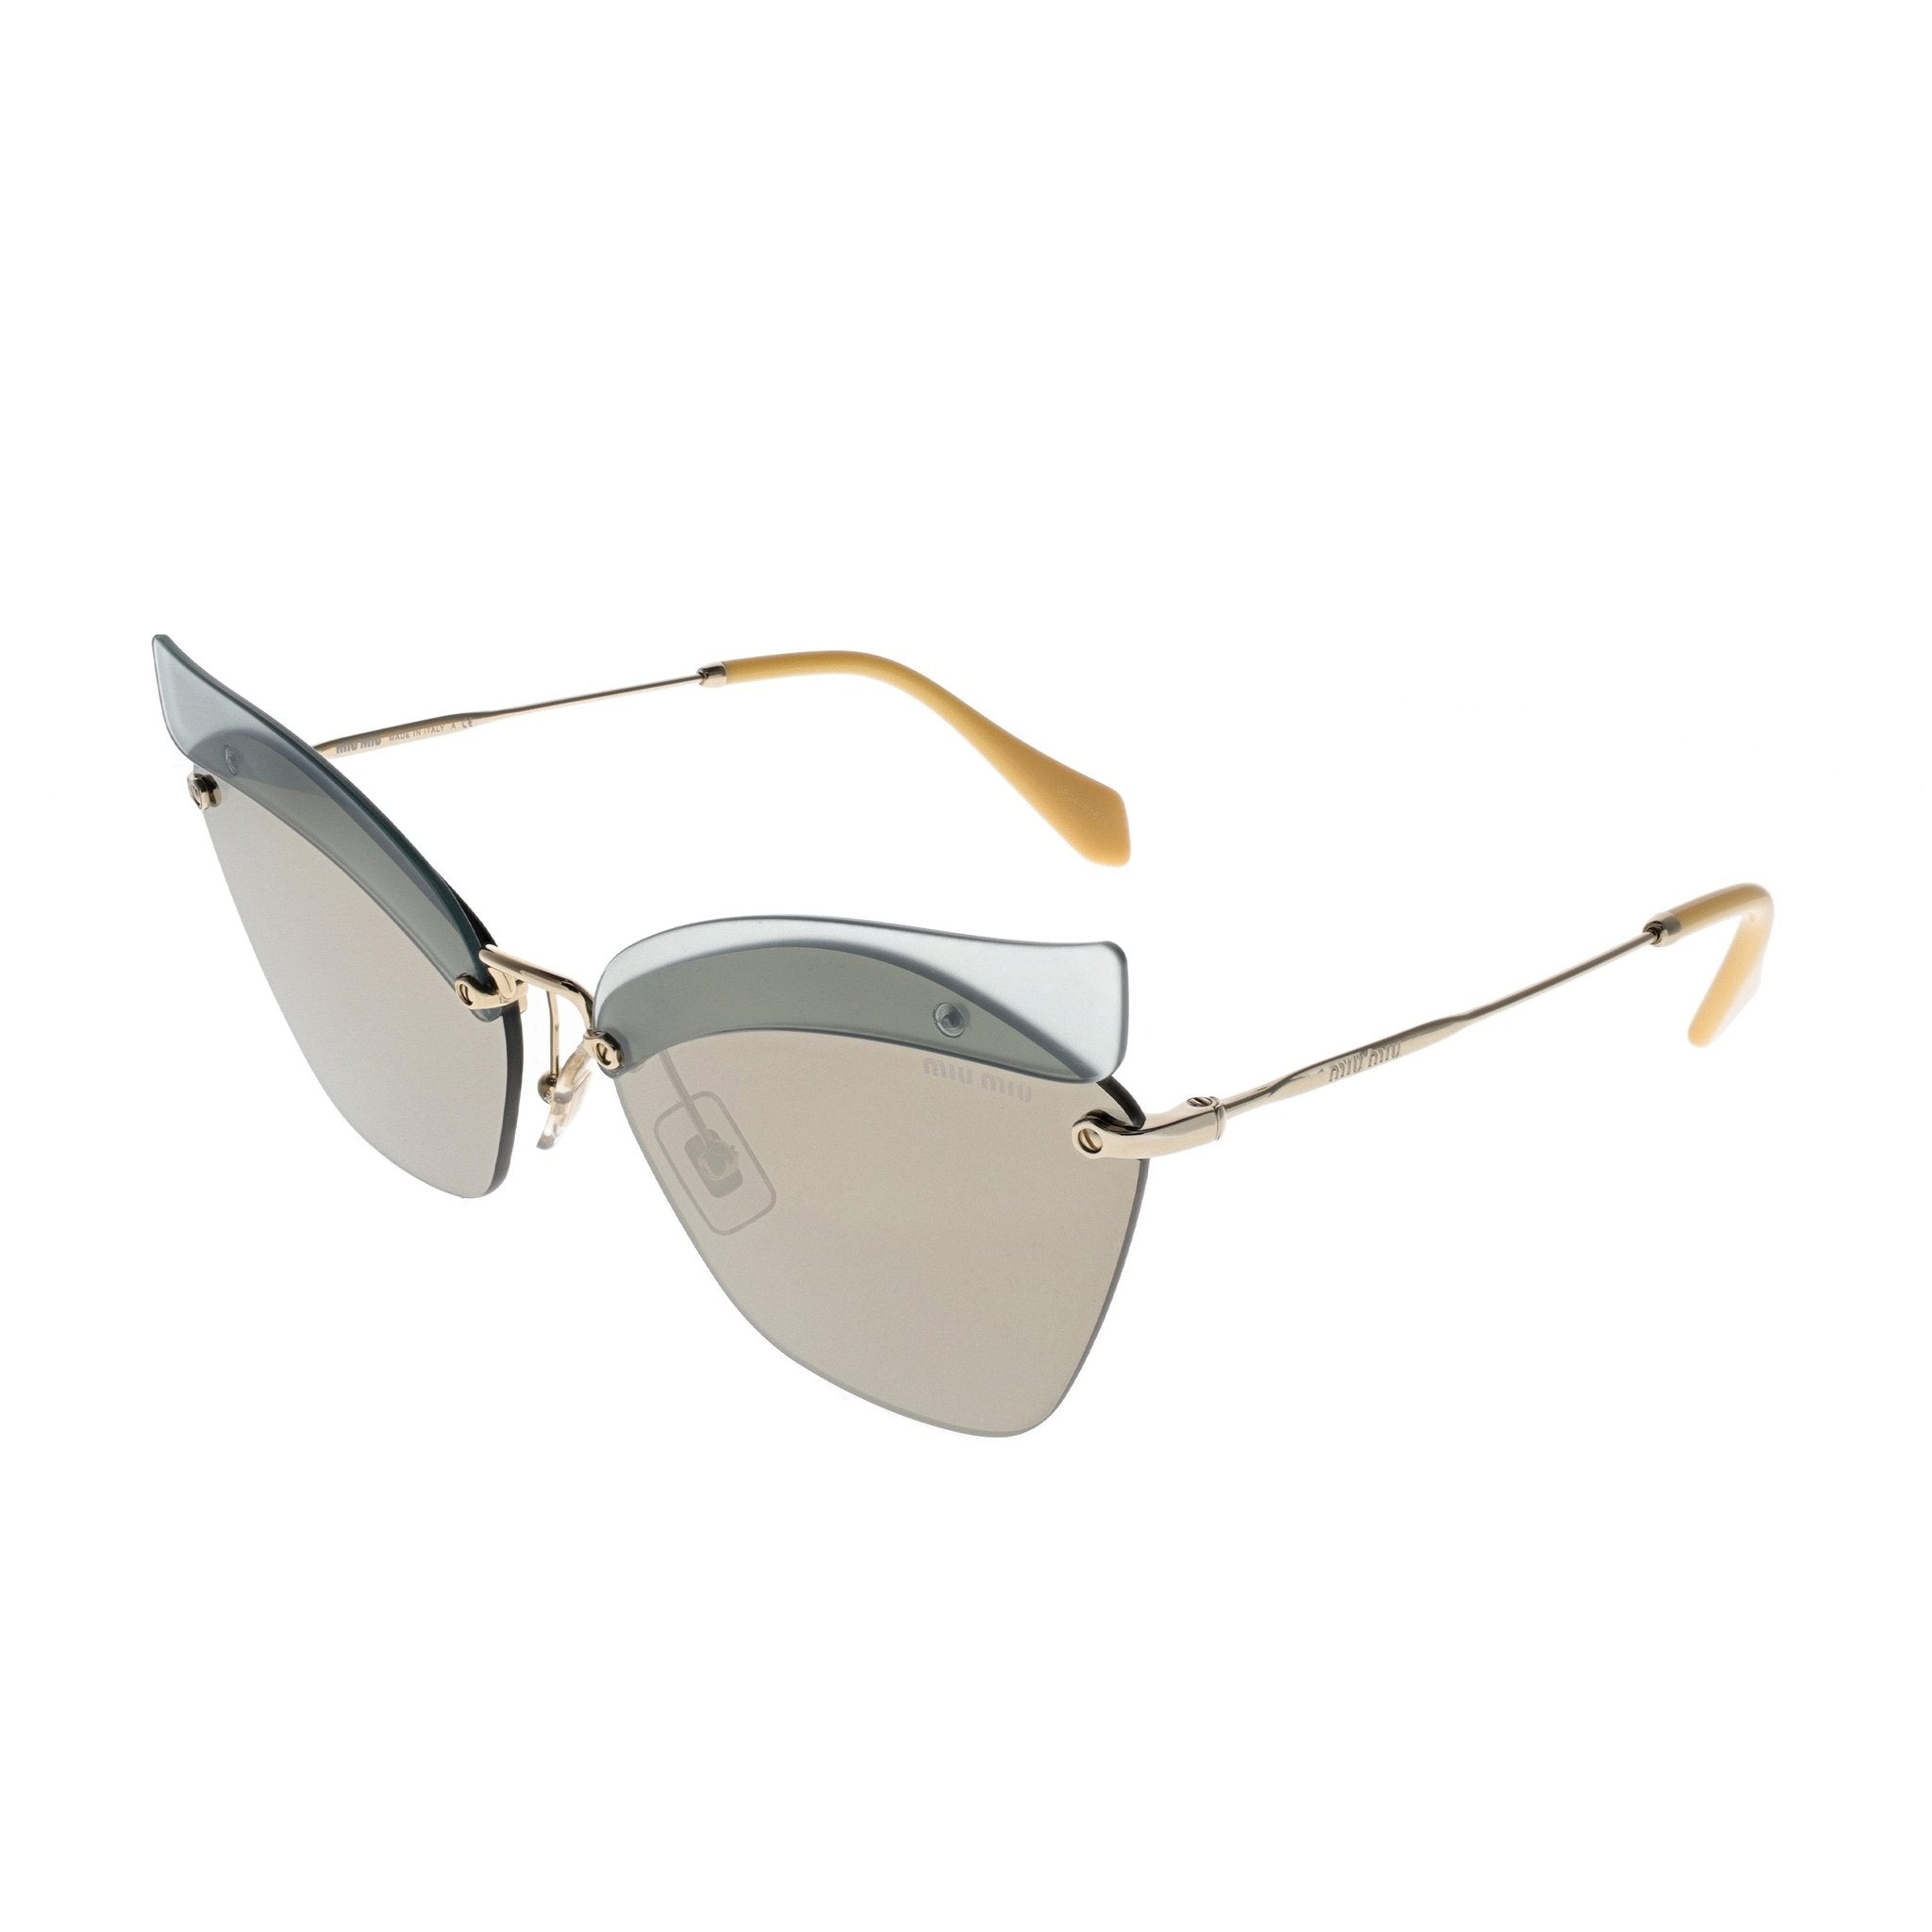 Miu Miu Sunglasses - SMU56T - BY61C0